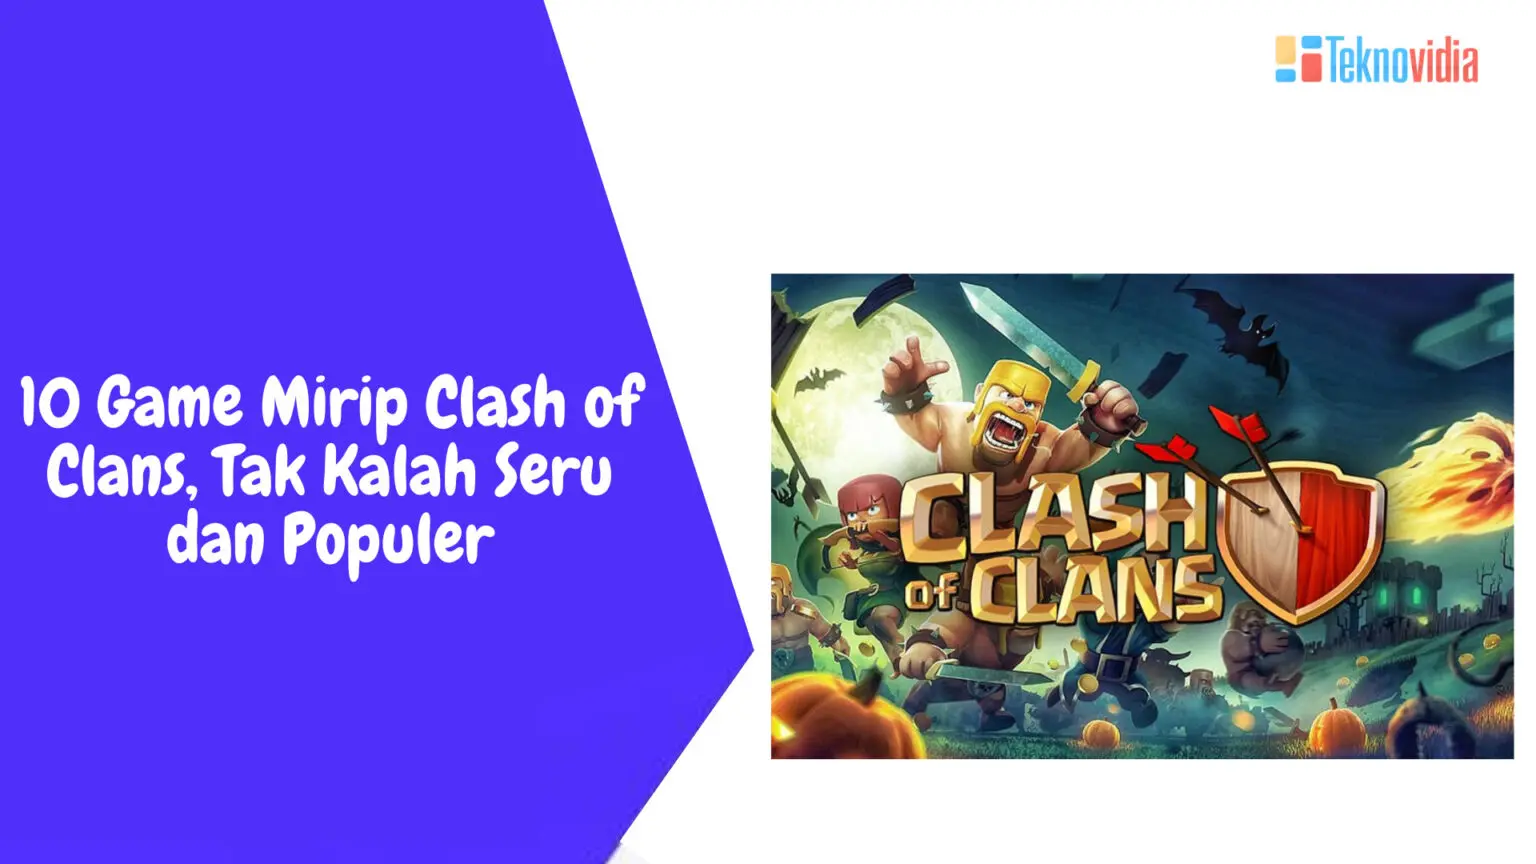 10 Game Mirip Clash of Clans, Tak Kalah Seru dan Populer